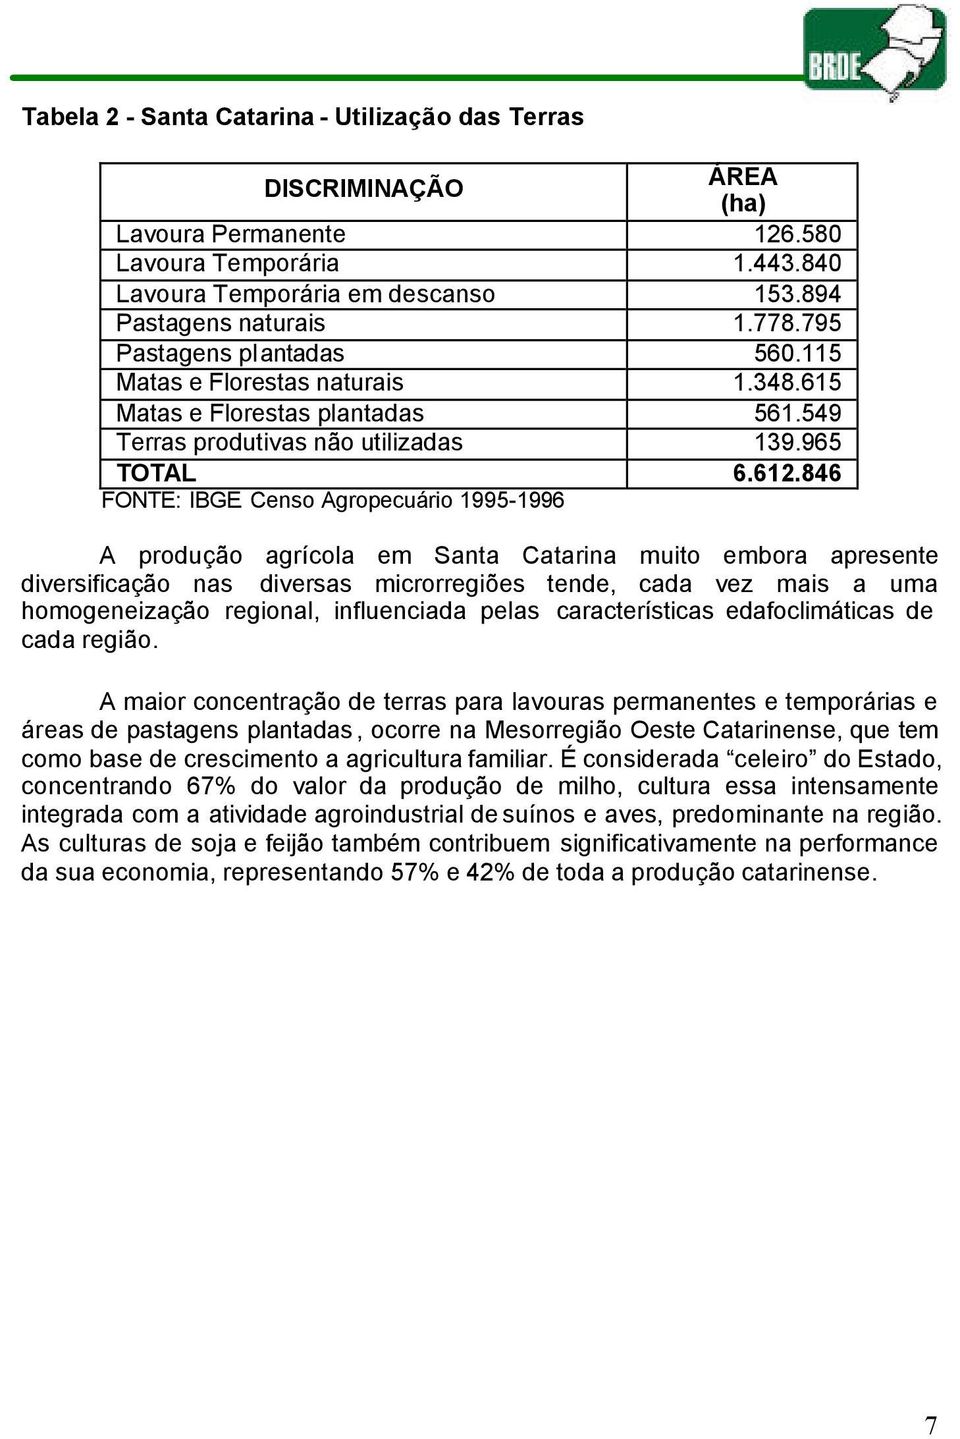 Censo Agropecuário 1995-1996 A produção agrícola em Santa Catarina muito embora apresente diversificação nas diversas microrregiões tende, cada vez mais a uma homogeneização regional, influenciada